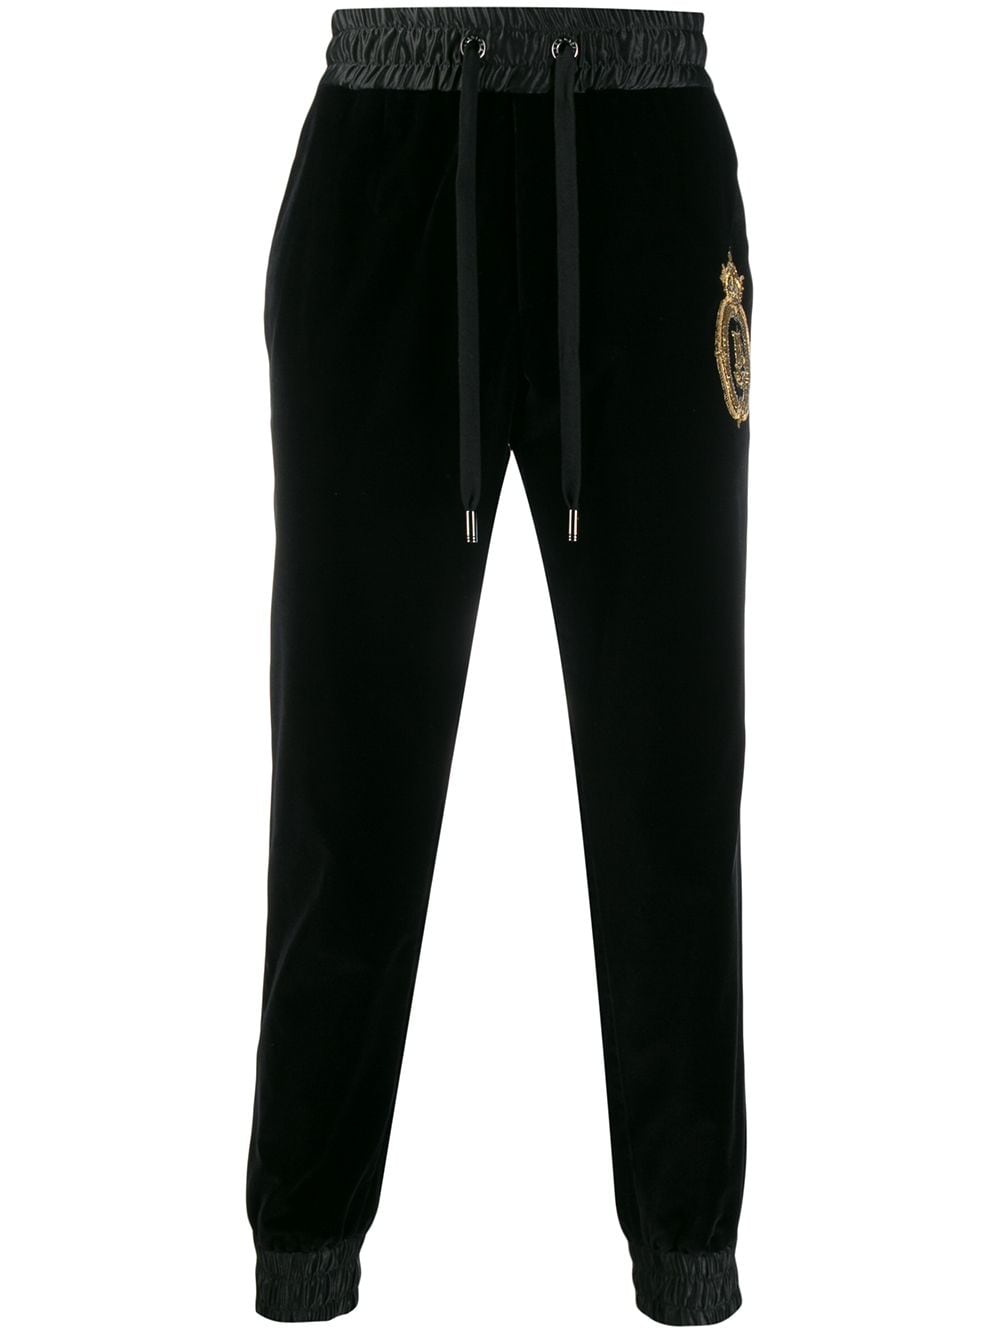 фото Dolce & Gabbana спортивные брюки с вышитым логотипом